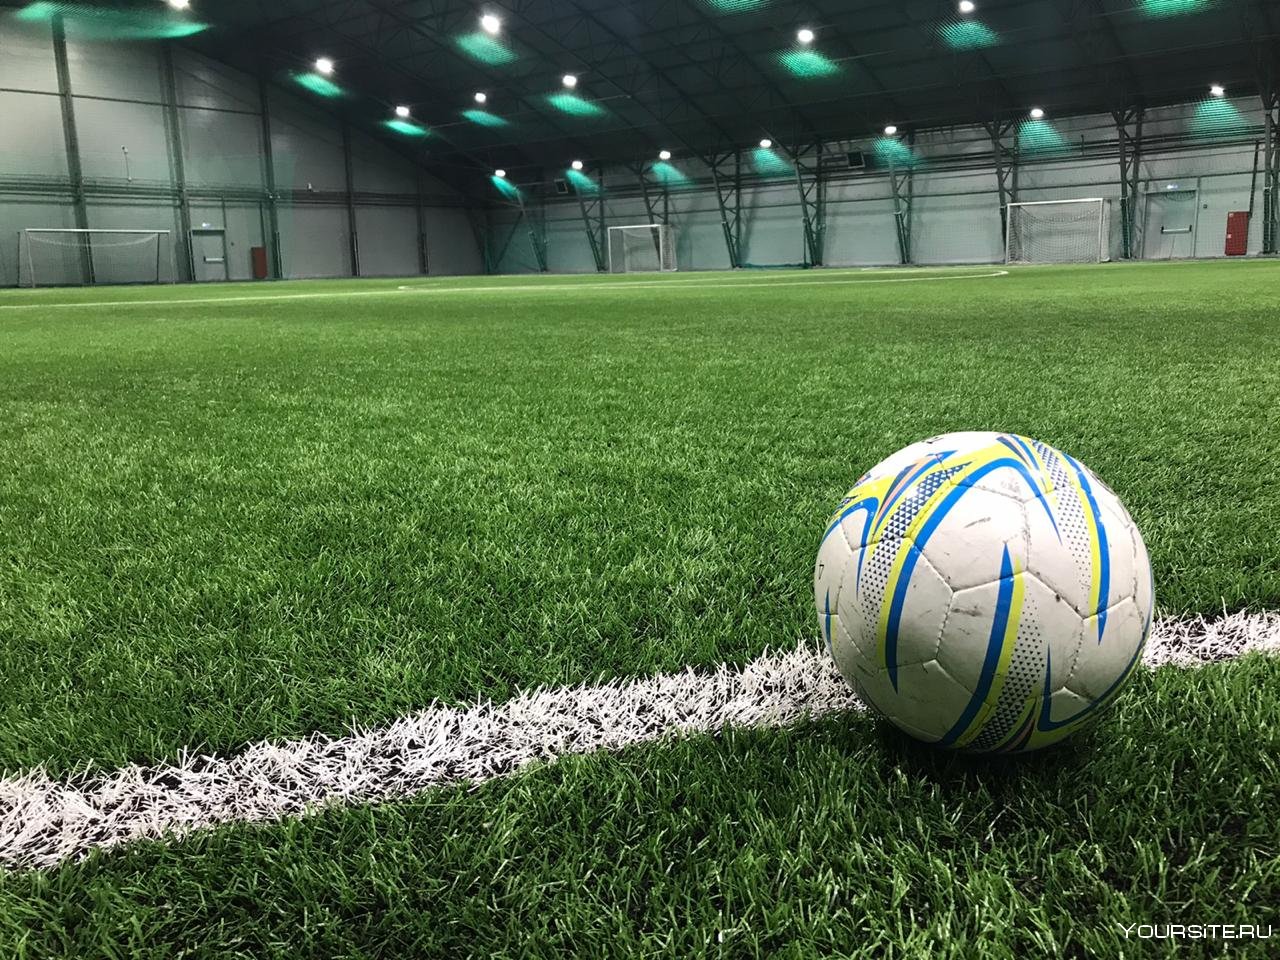 Какой мяч в мини футболе. Зеленое футбольное поле. Футбольный мяч на траве. Мини футбольное поле газон. Футбольный мяч на поле.